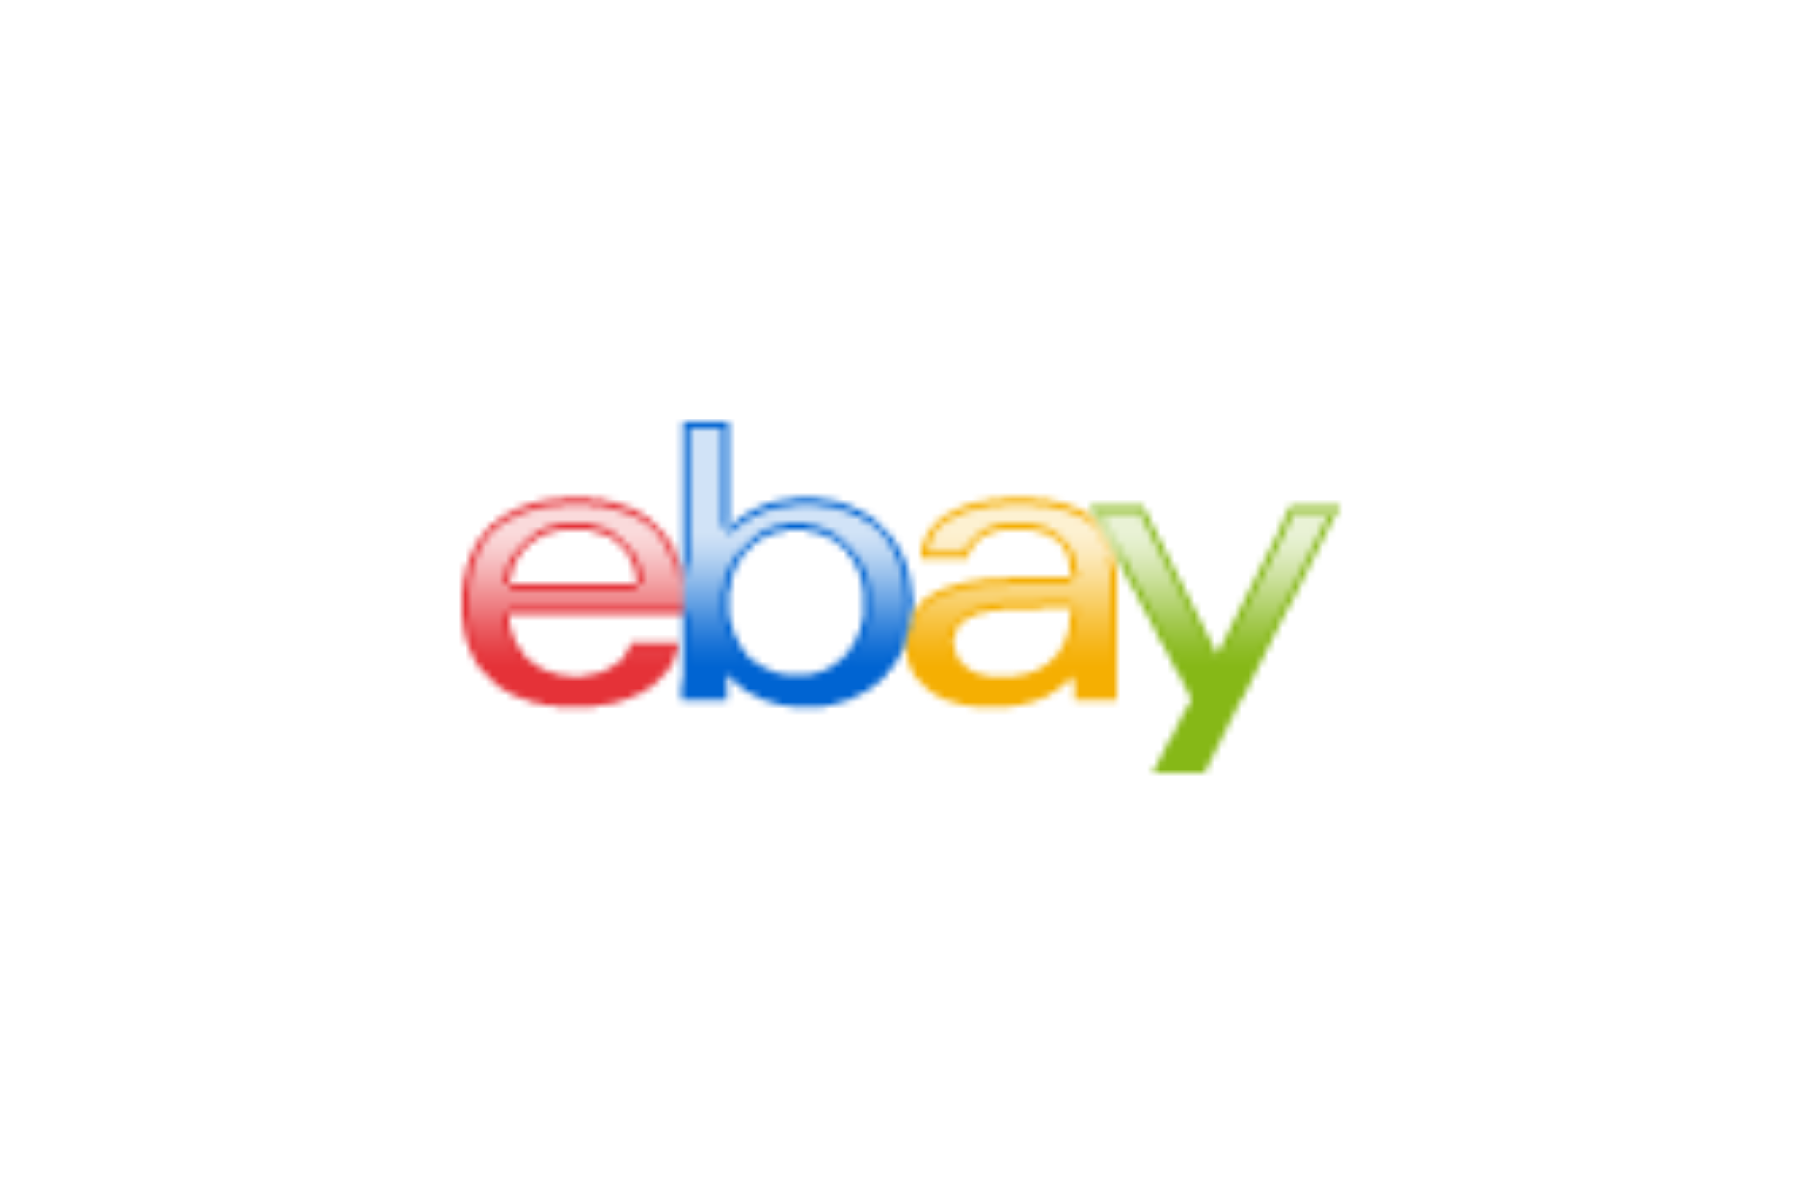 EBay's logo in multiple colors